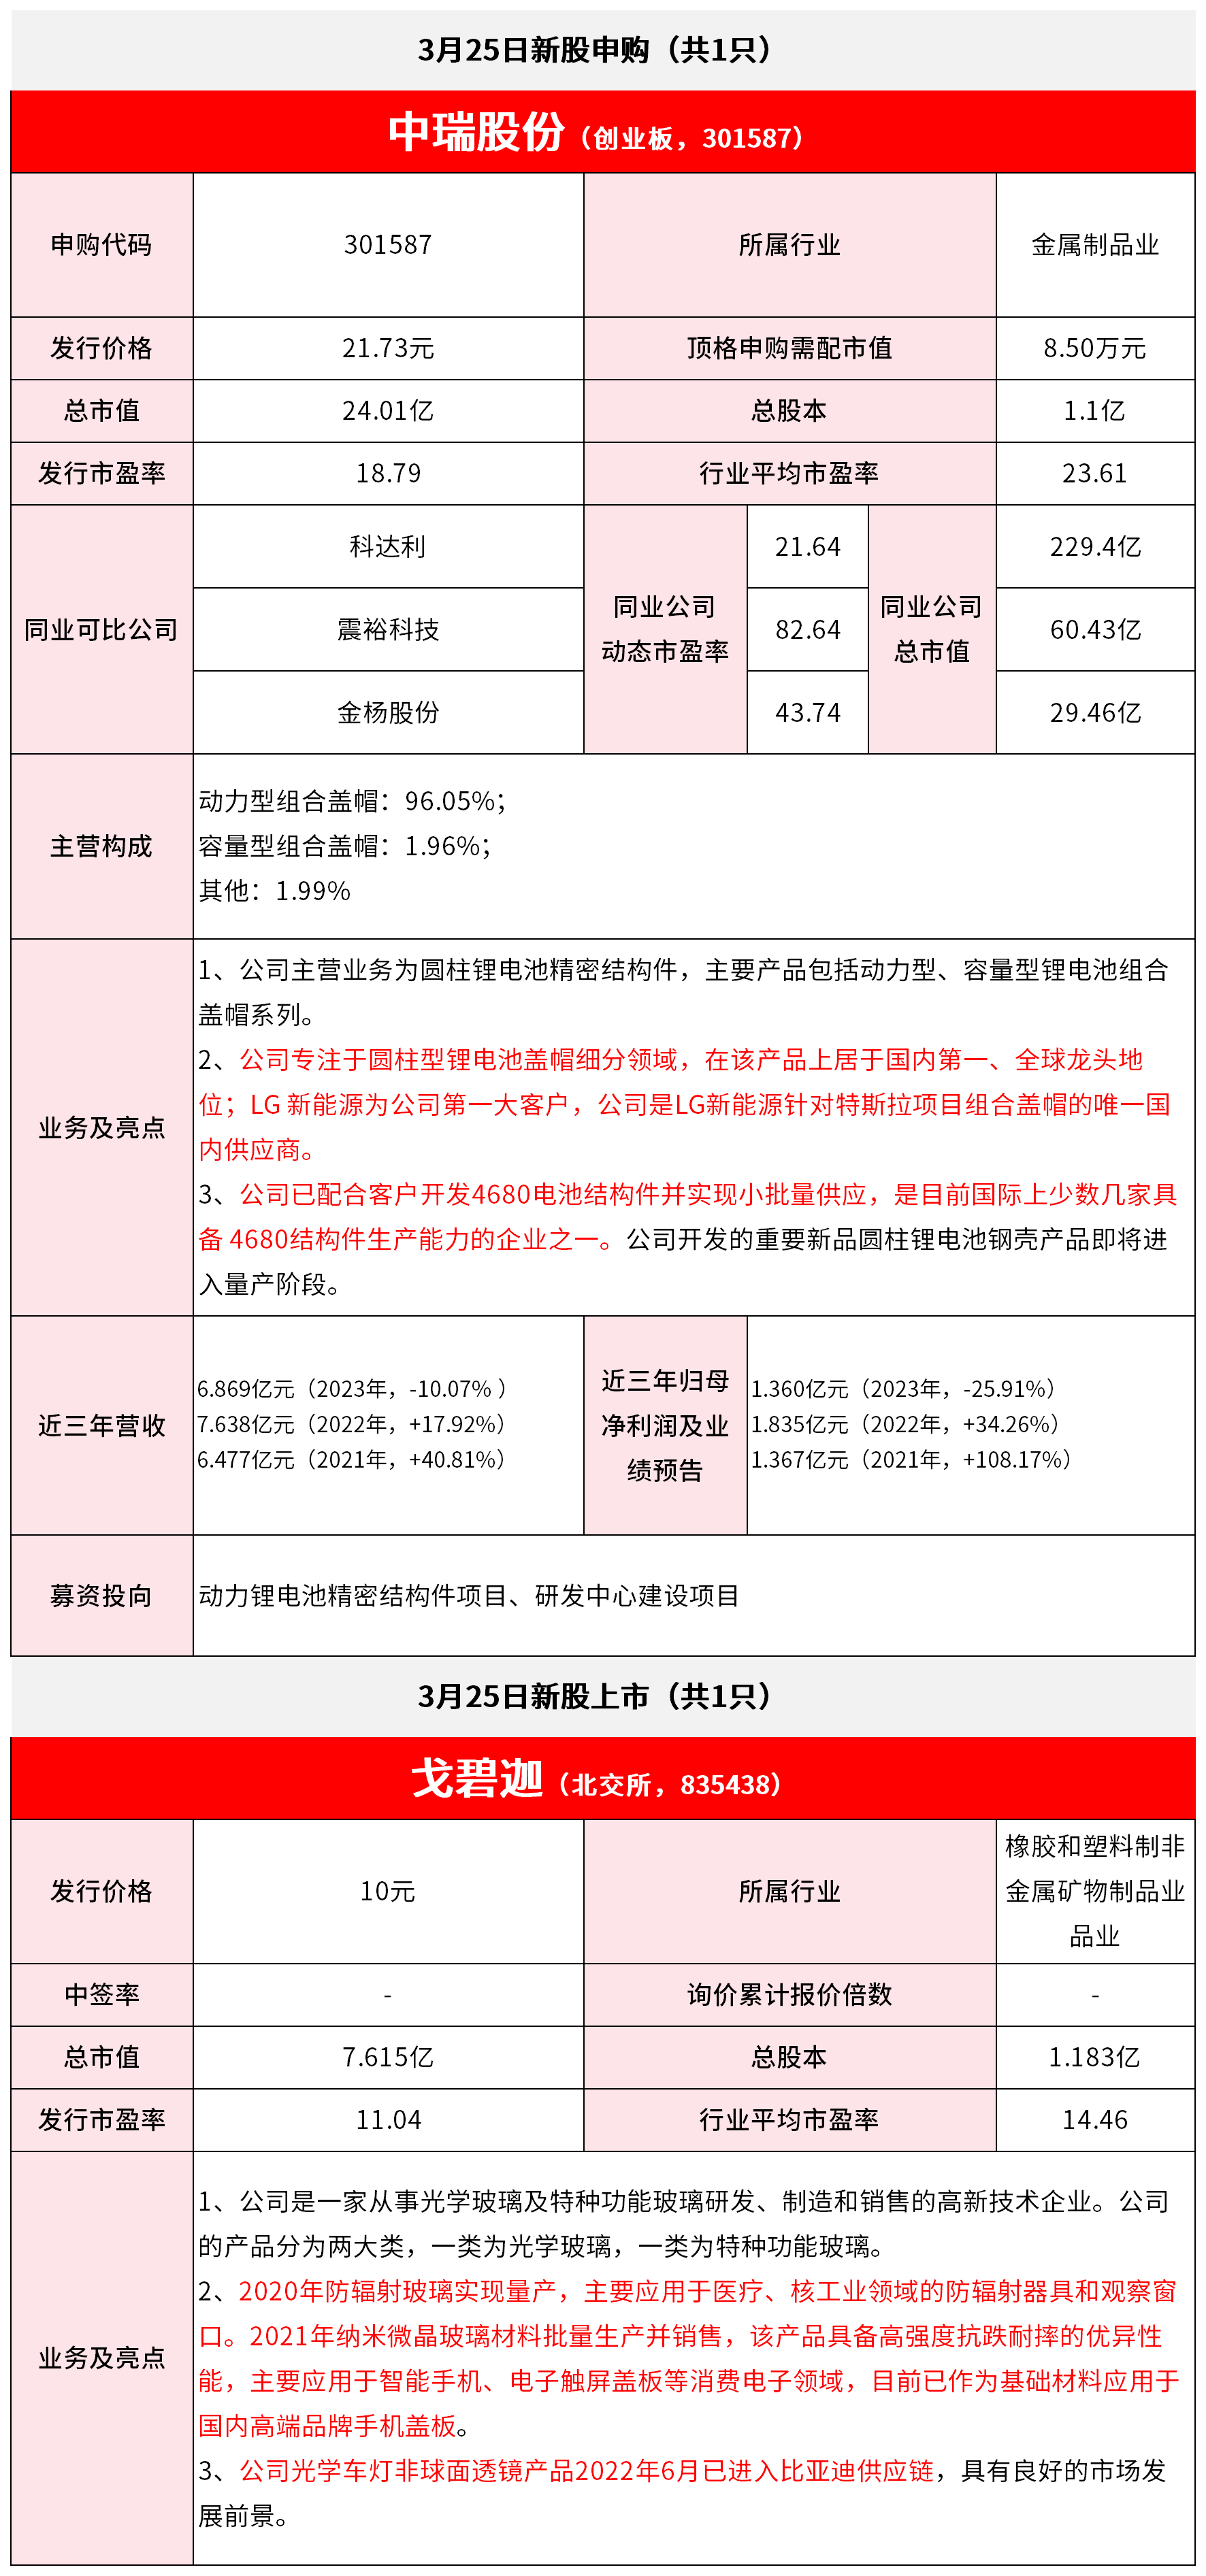 【3月25日IPO雷达】中瑞股份申购，戈碧迦上市